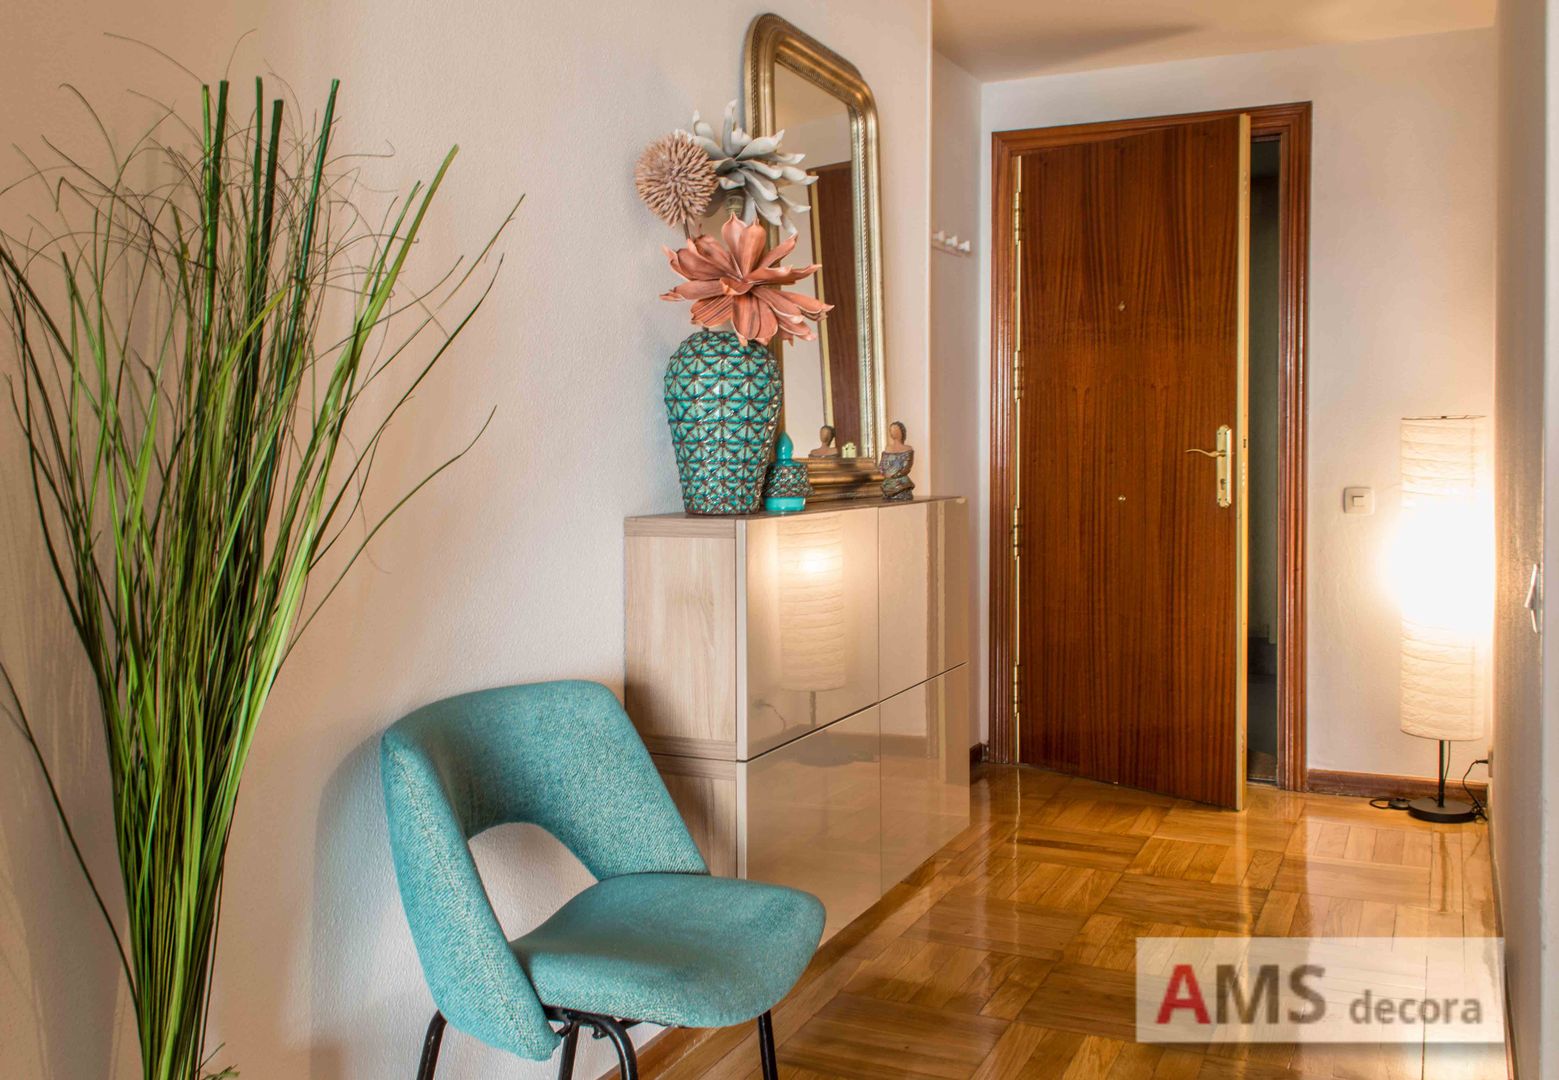 Redecoración de Piso: Un ambiente completamente hogareño y cálido, AMS decora AMS decora Modern Corridor, Hallway and Staircase Storage